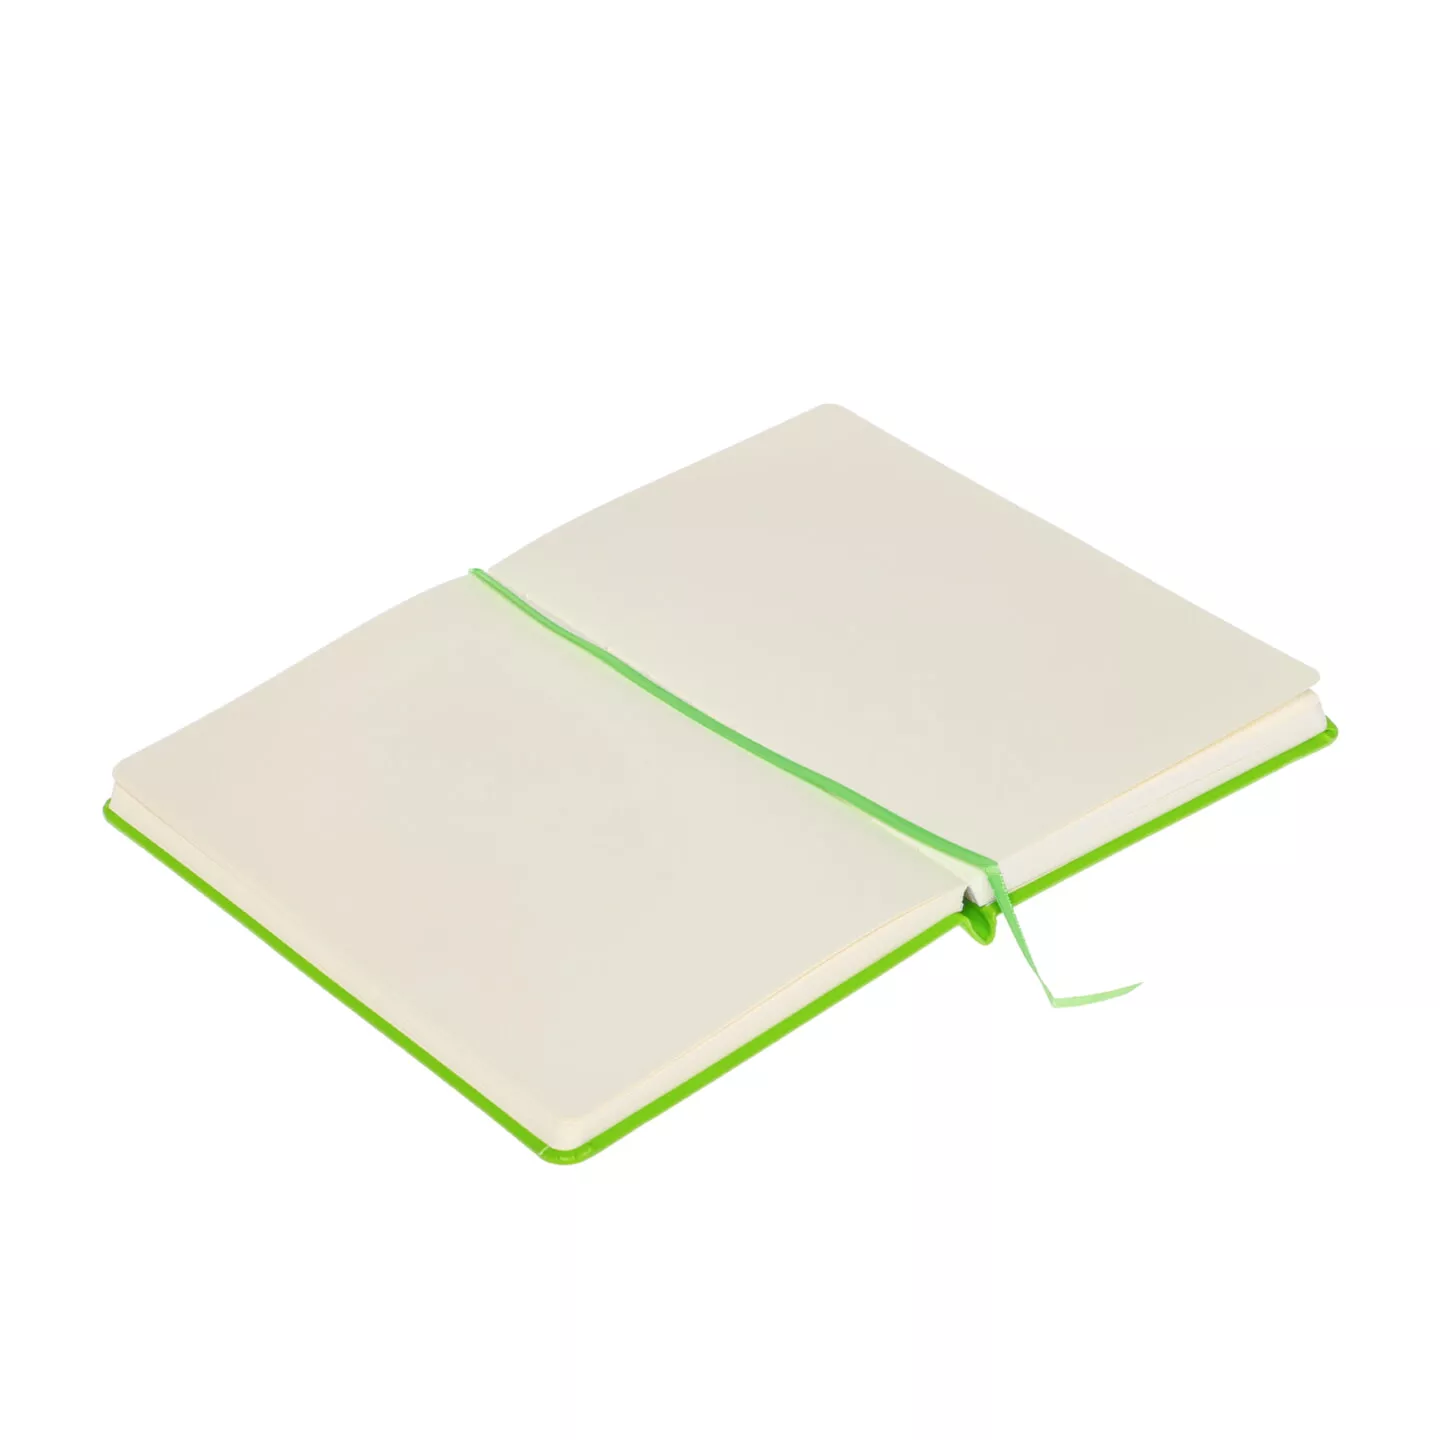 Блокнот для зарисовок Sketchmarker 140г/кв.м 13*21см 80л (Зеленый луг)